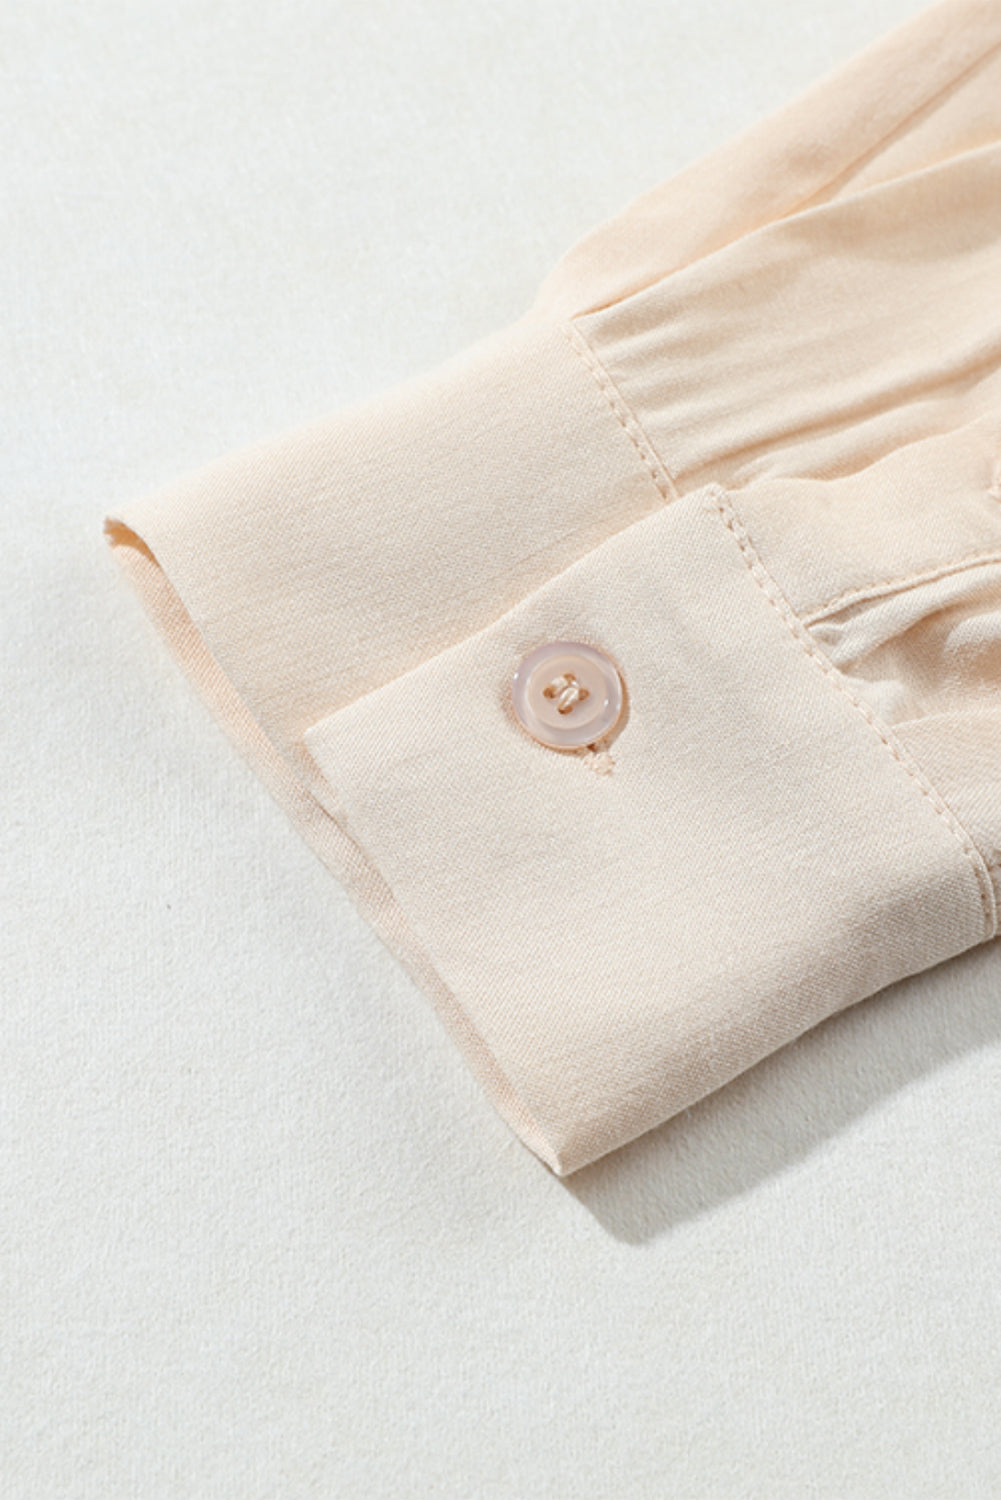 Camicia ampia e bassa con tasca sul petto con bottoni in tinta unita albicocca